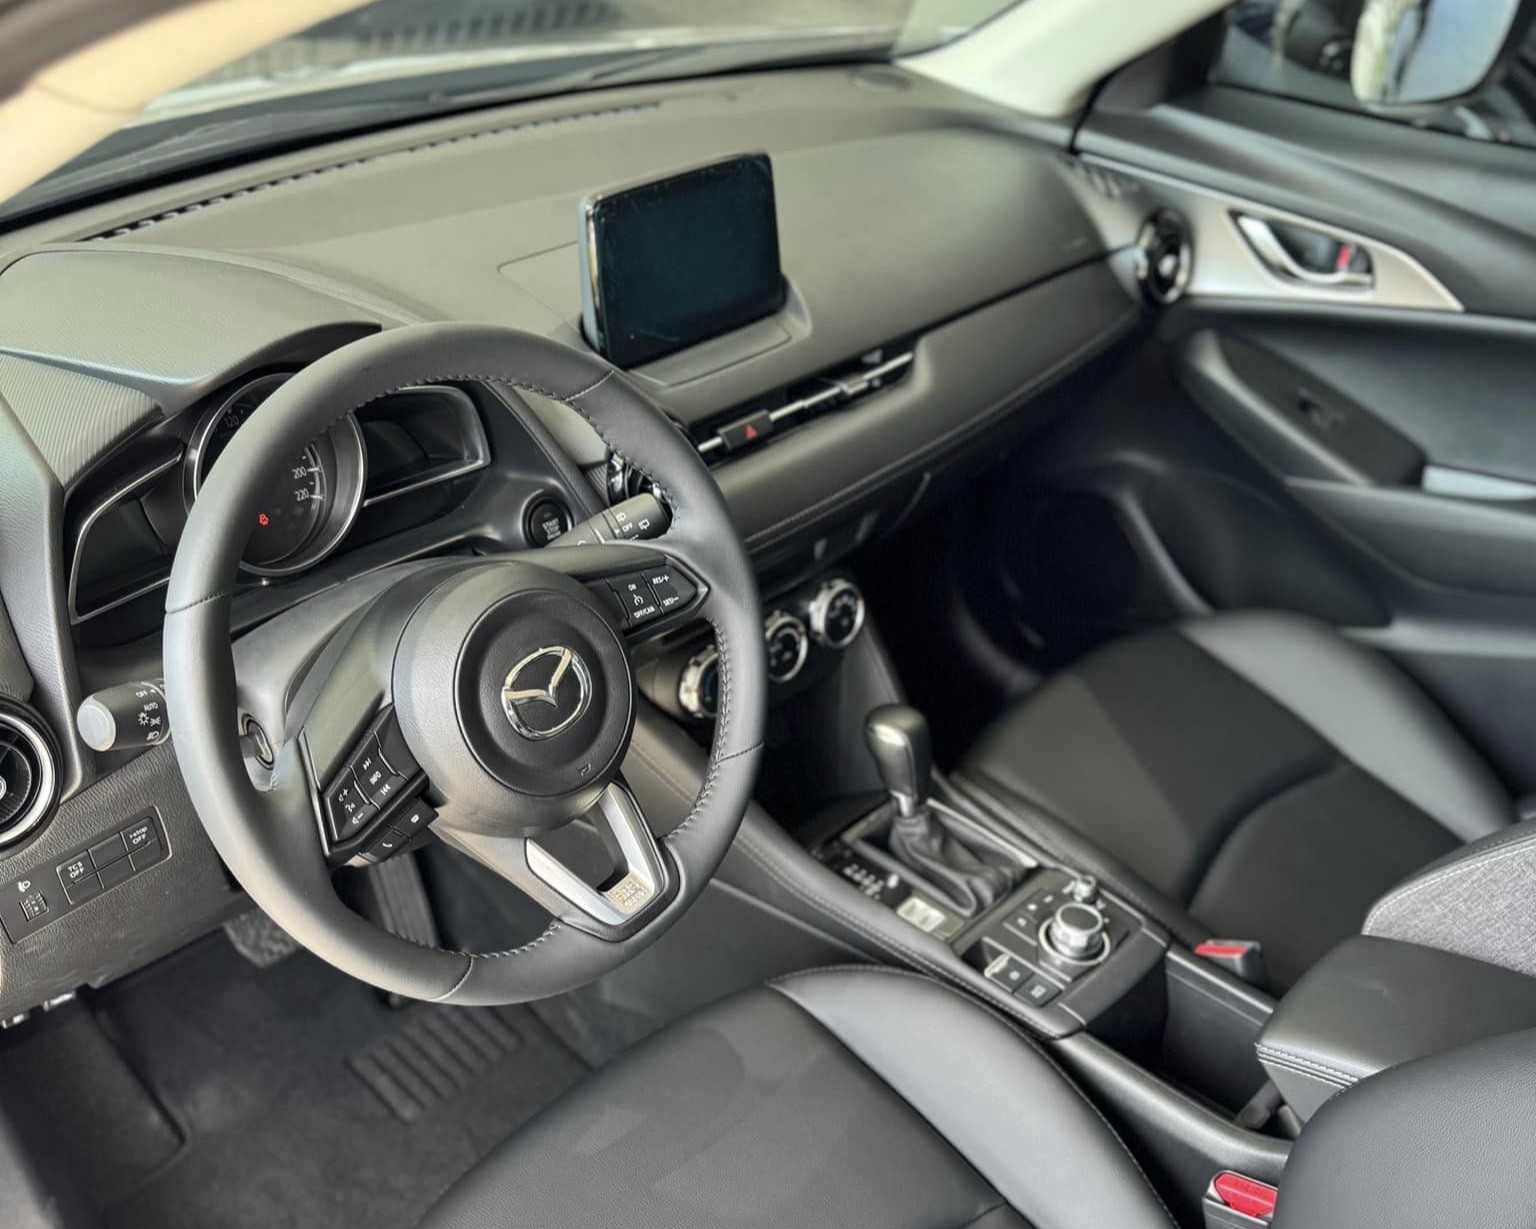 Mazda CX-3 giảm giá, trở thành SUV cỡ B có giá rẻ nhất, doanh số có tăng?